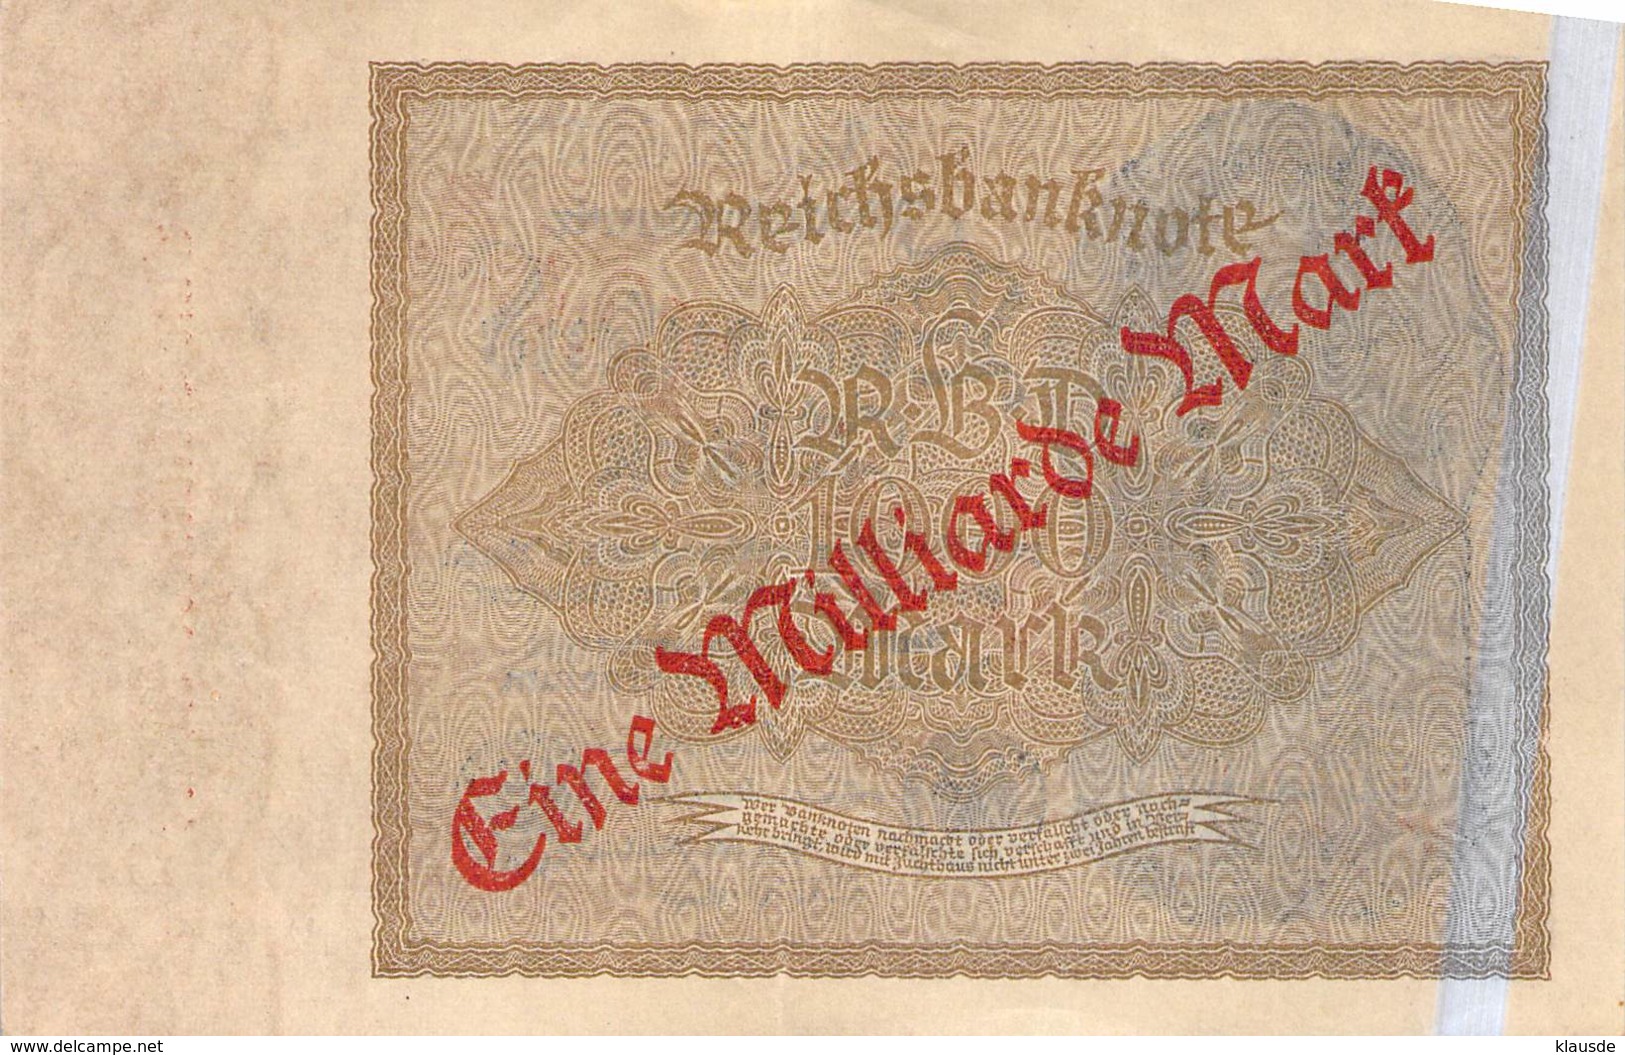 1 Milliarde Mark Überdruckprovisorium 1922 Reichsbanbknote - 1 Mrd. Mark